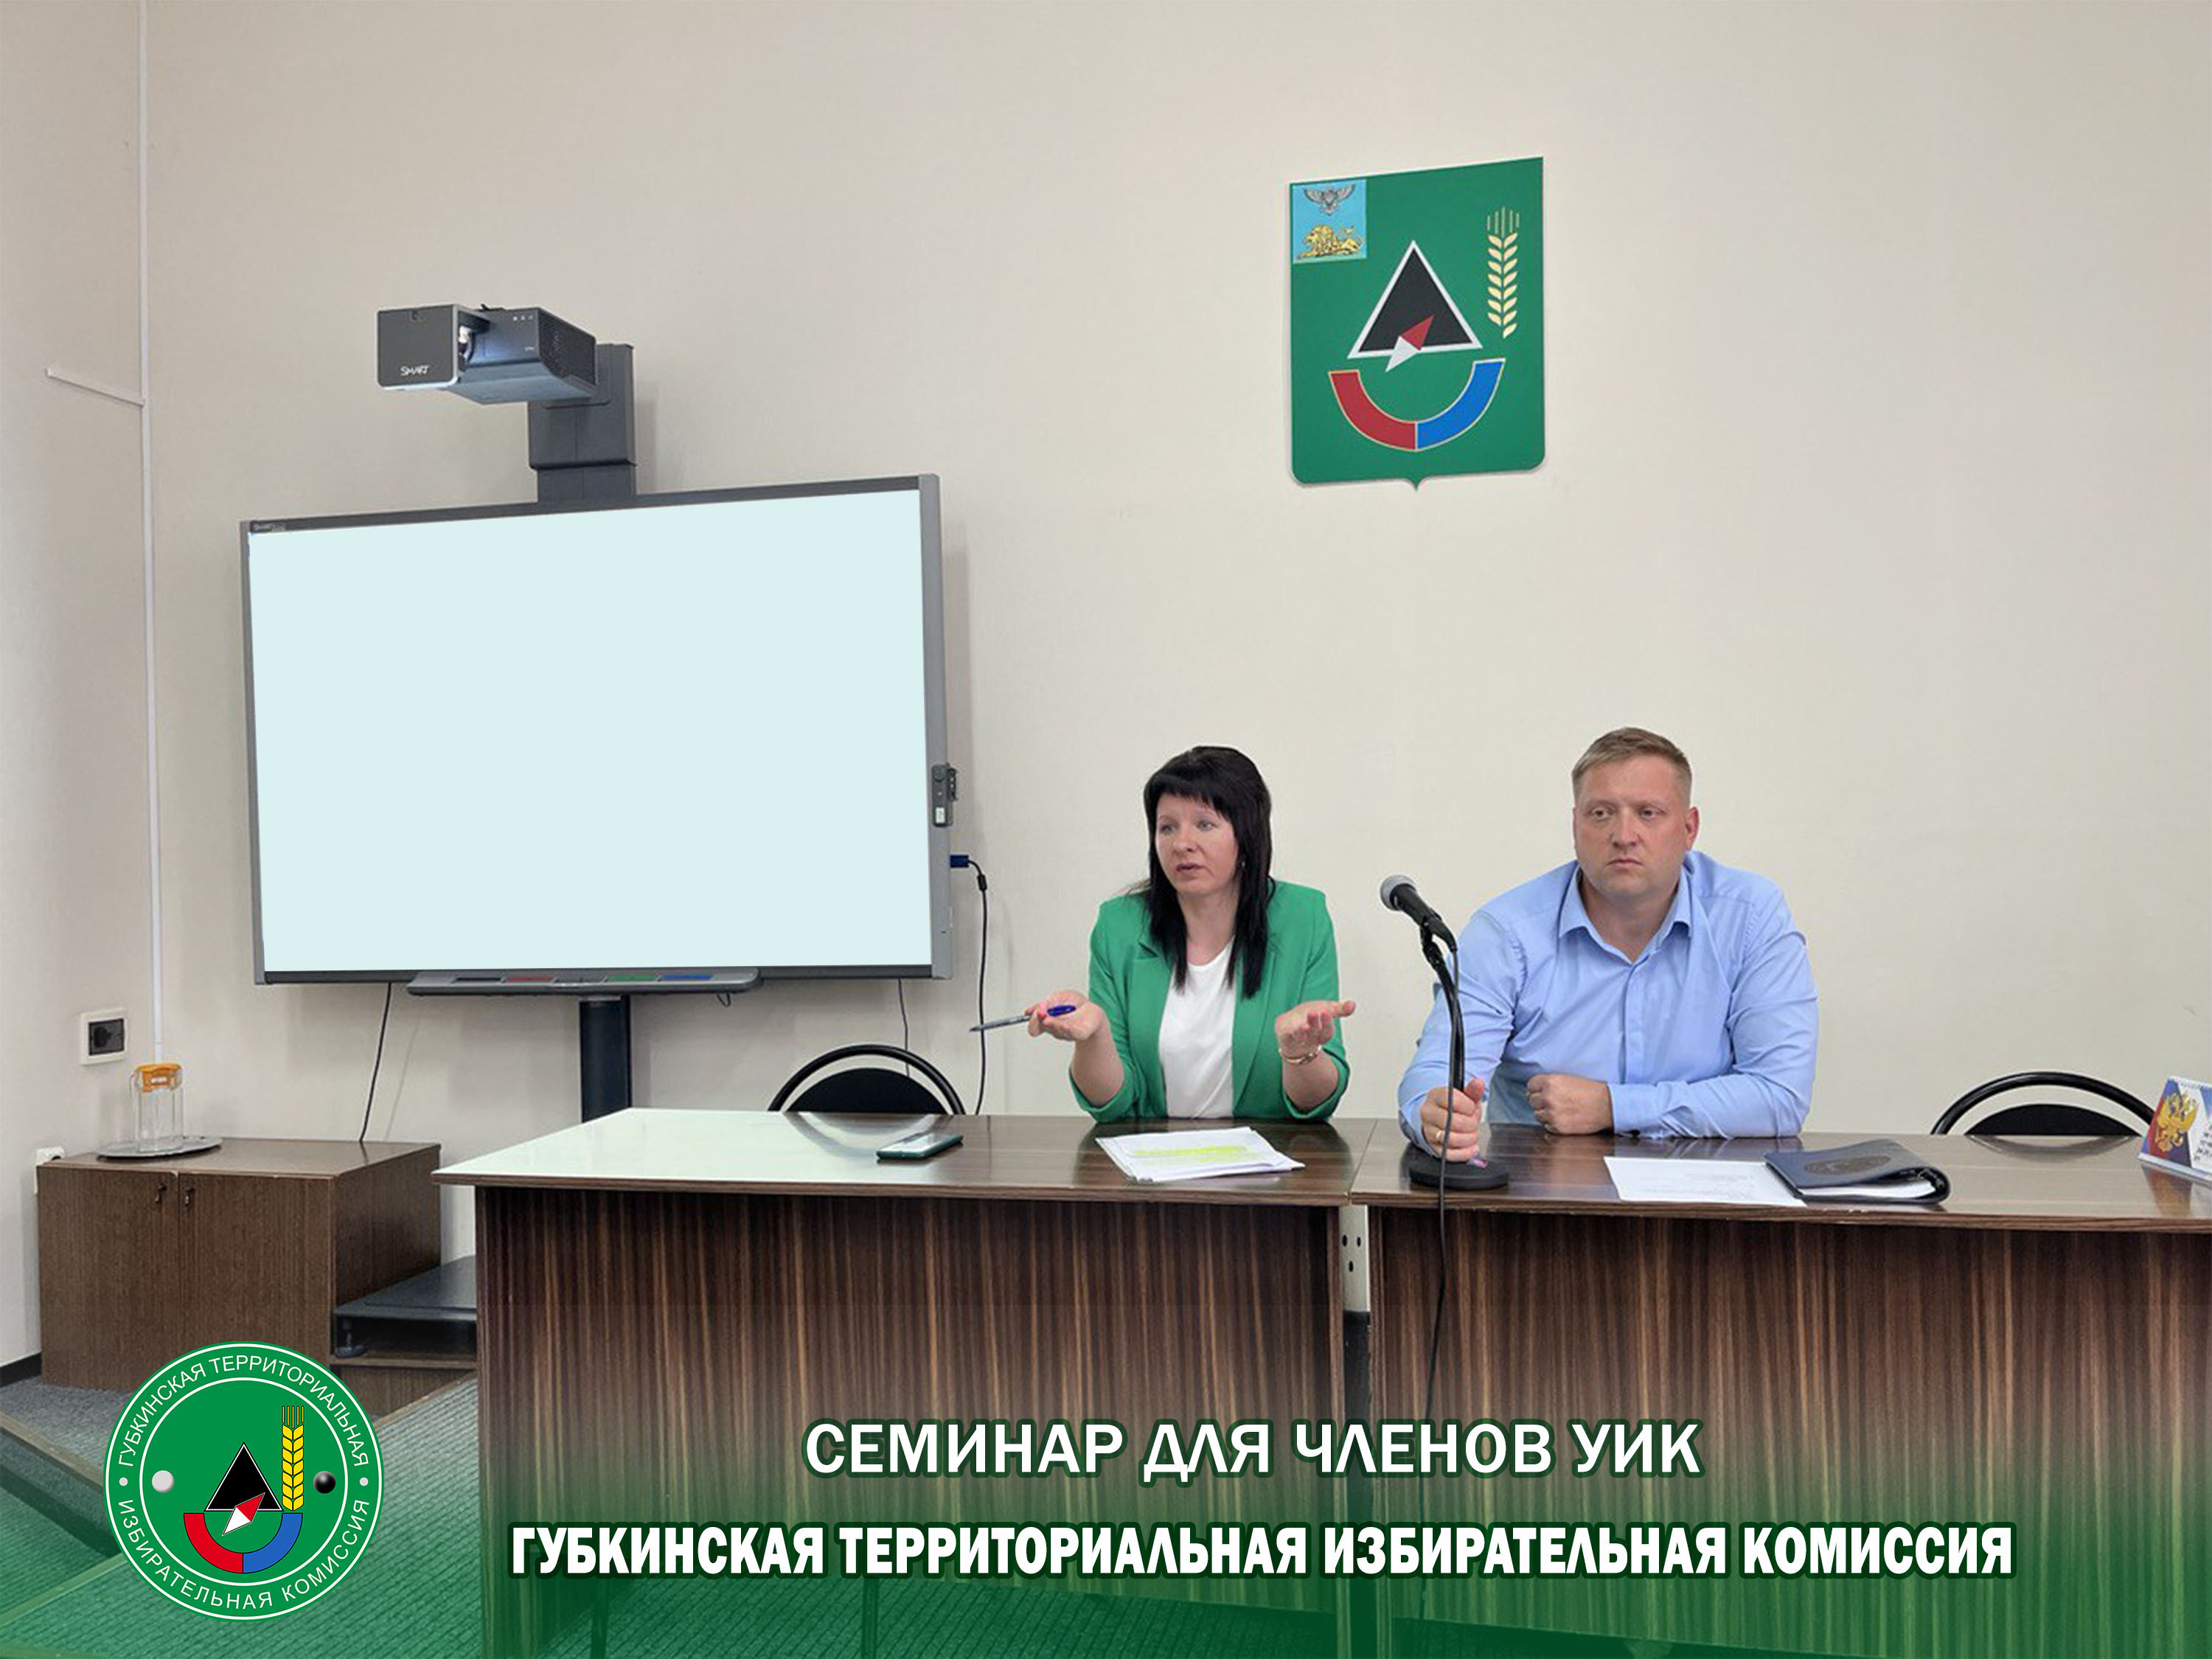 Семинар для вновь назначенных членов участковых избирательных комиссий прошёл в Губкине.